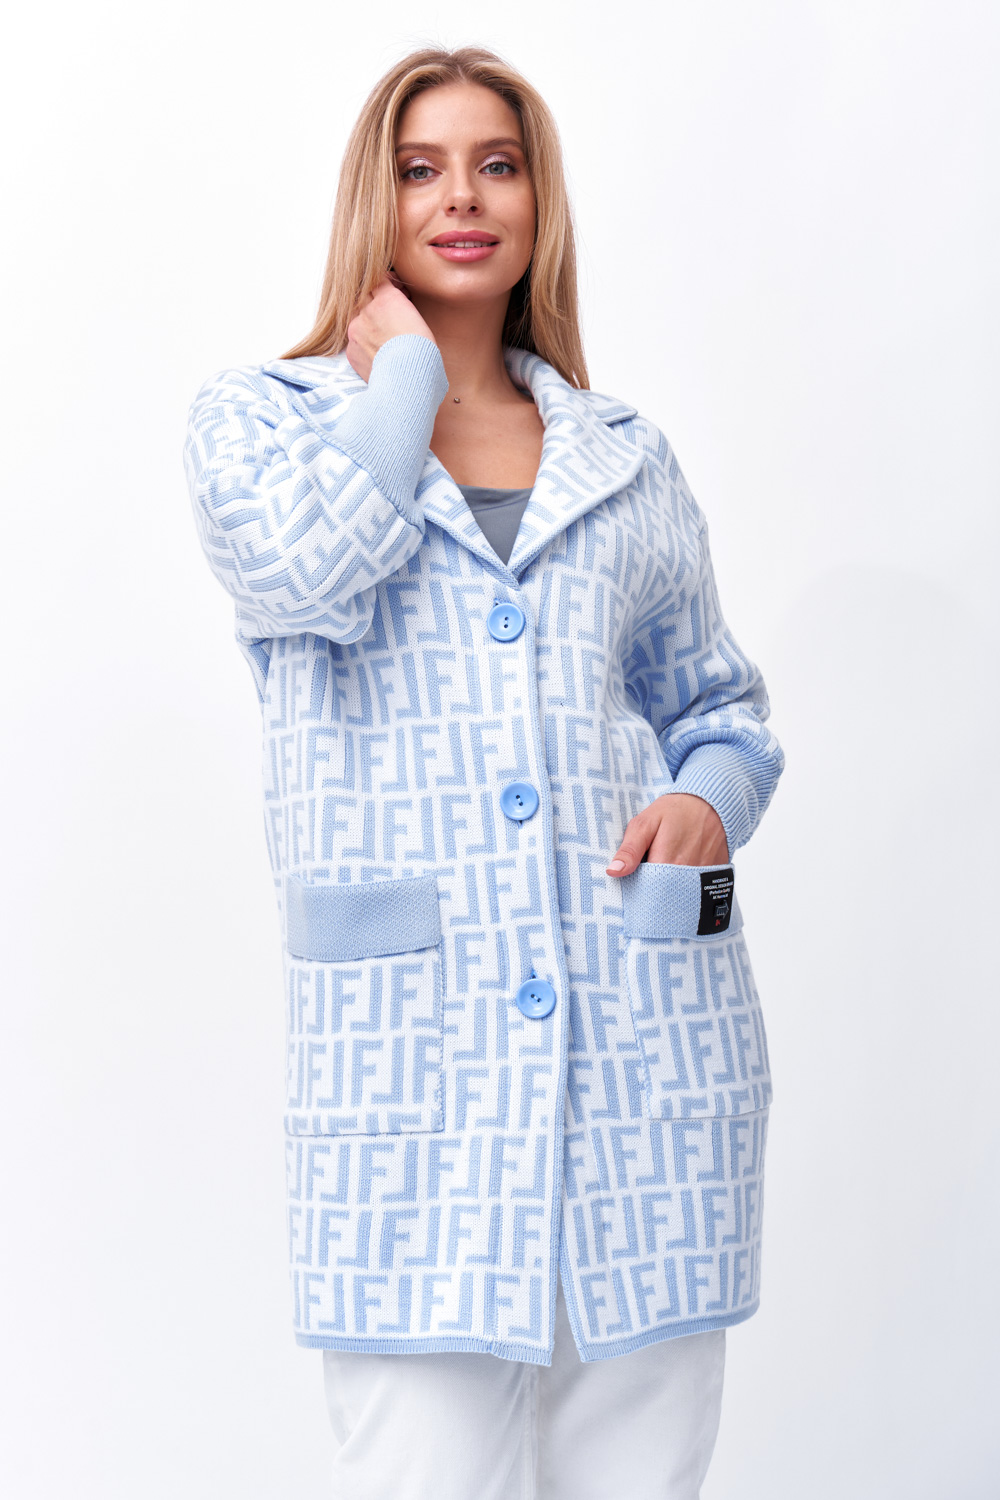 Кардиган женский Текстильная Мануфактура Д 2721 голубой 528 RU